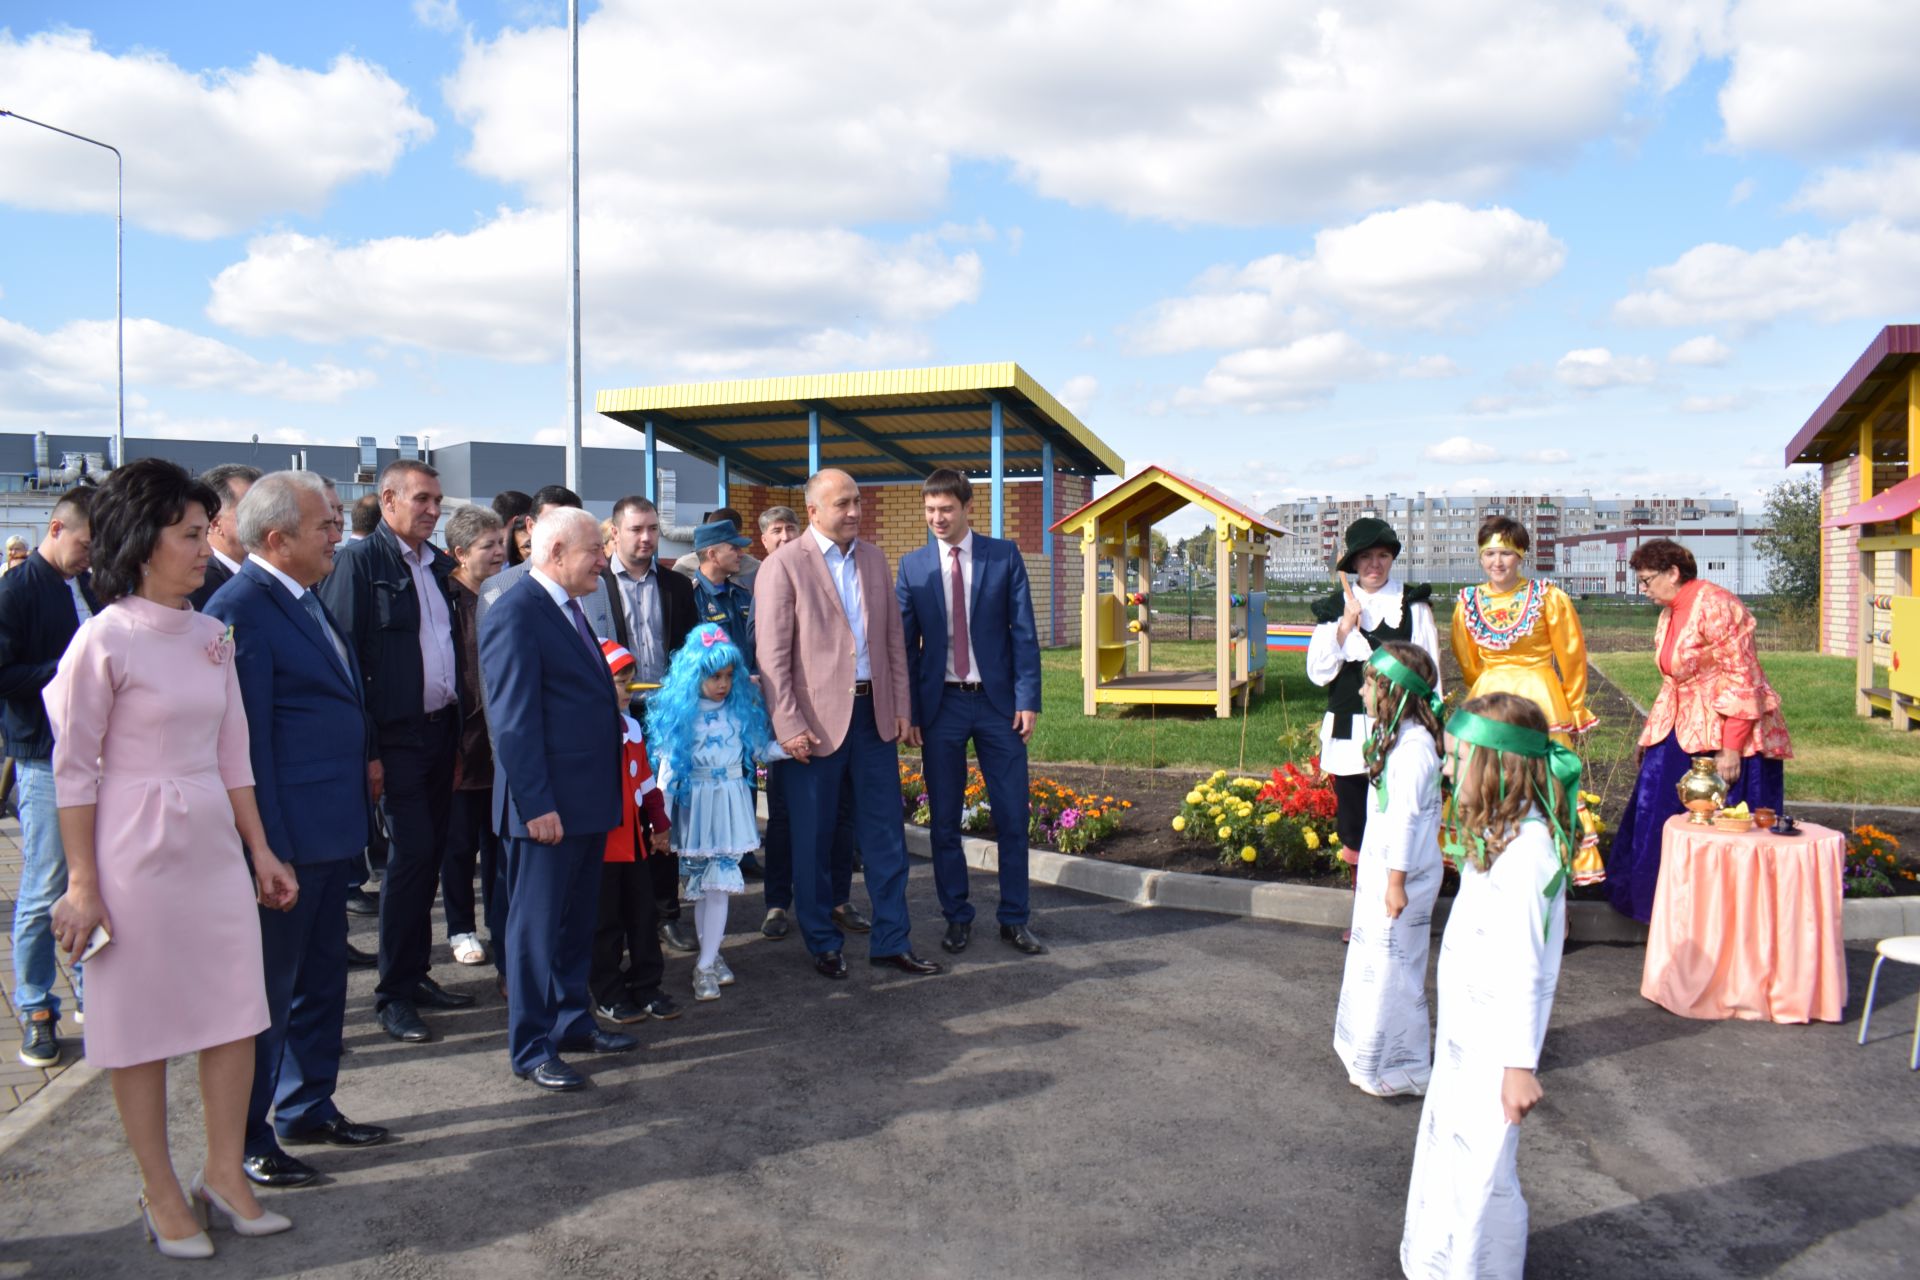 В Азнакаево открылся новый детский сад «Сандугач» (ФОТО+ВИДЕО)